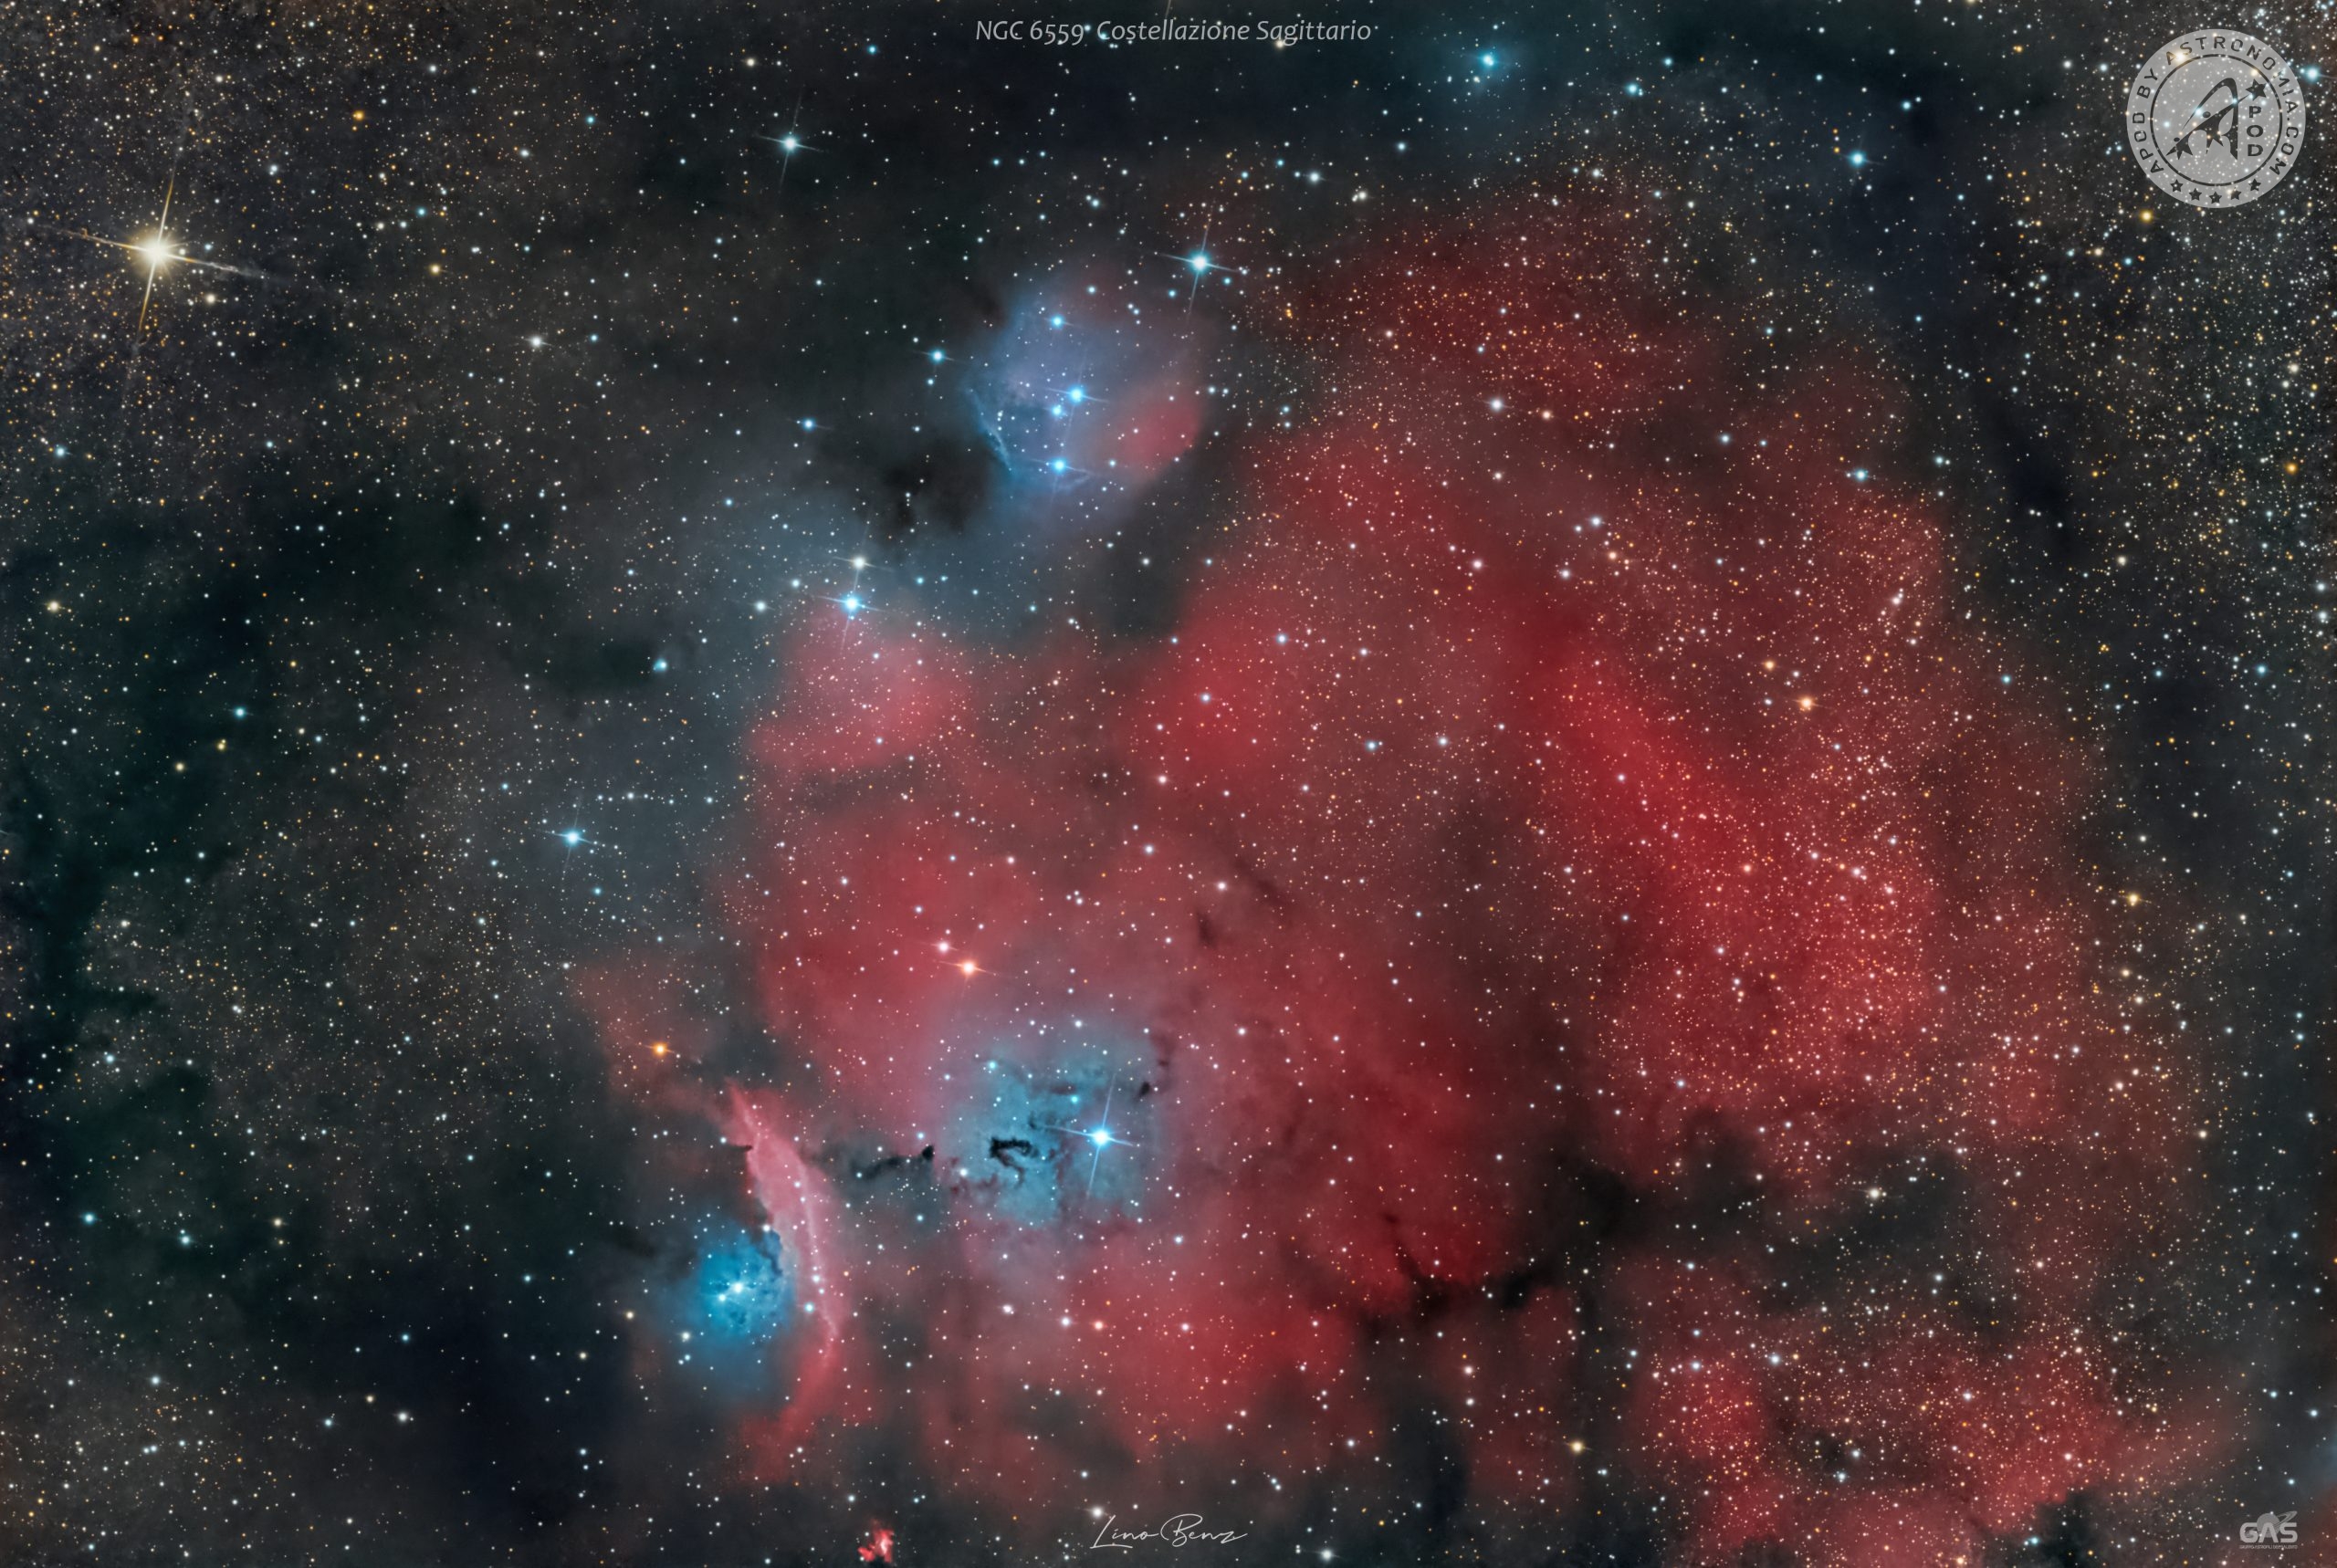 La regione di formazione stellare NGC 6559